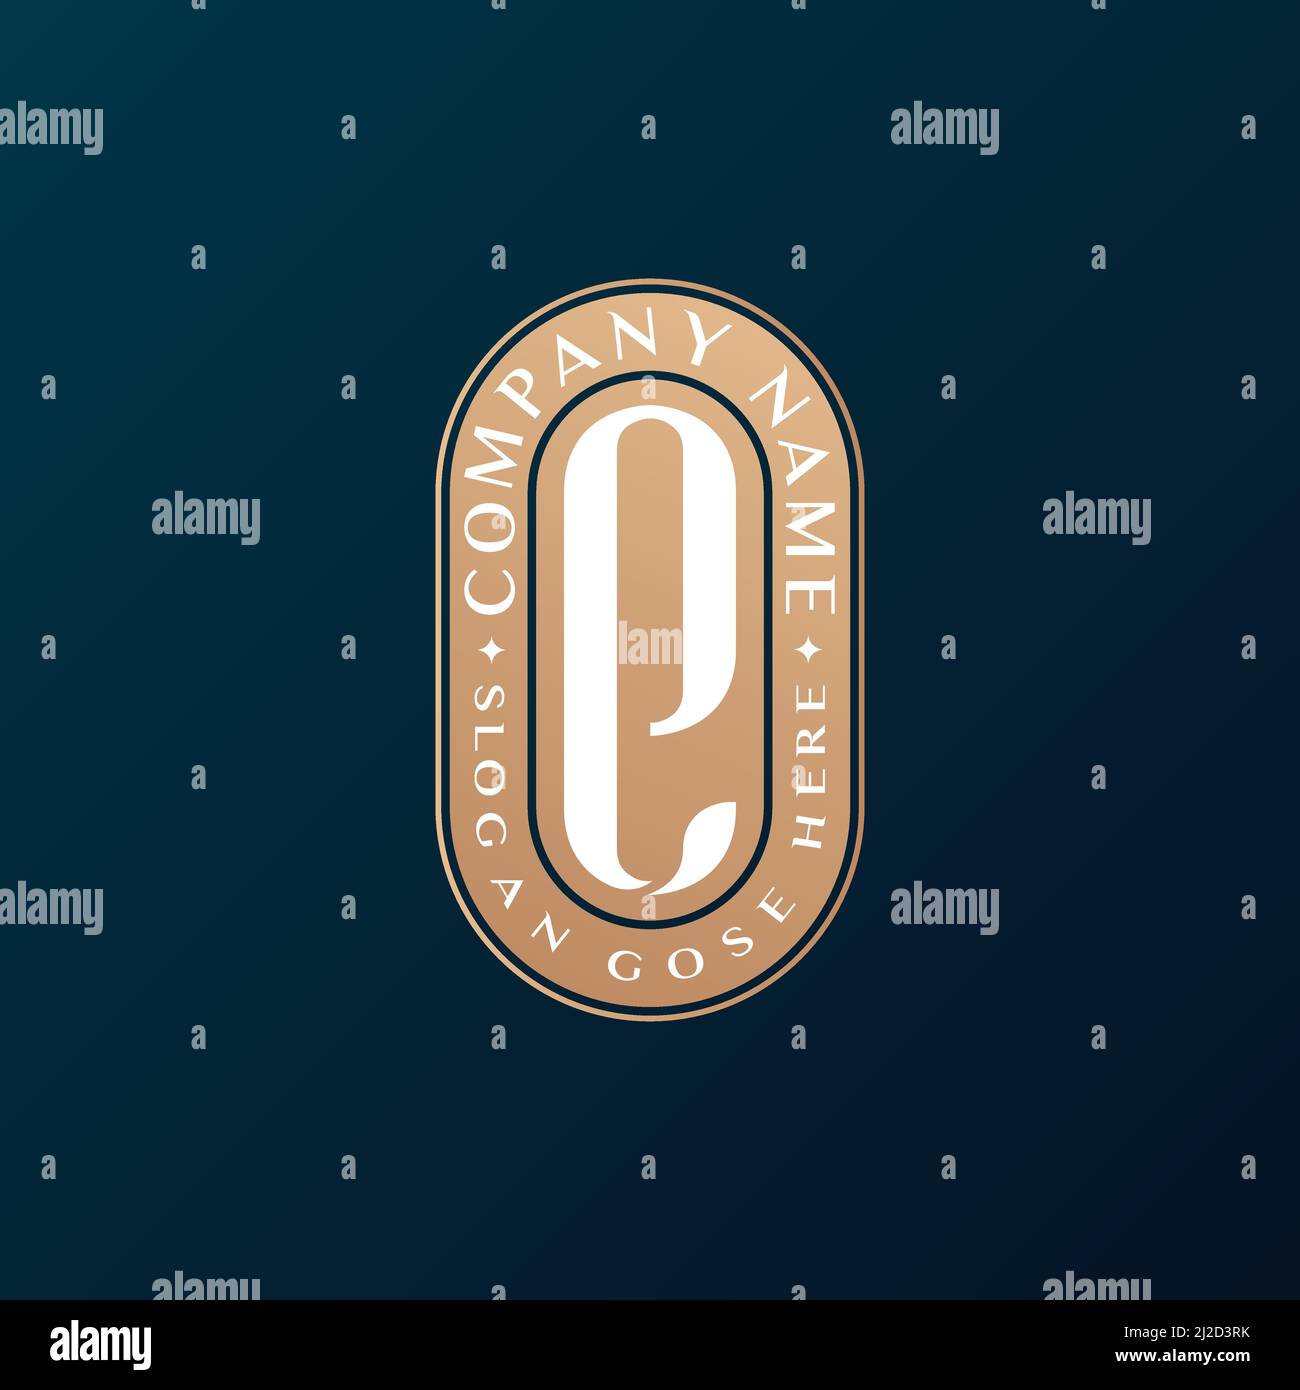 Abstrait Emblem Premium luxe identité d'entreprise élégant lettre E logo design Illustration de Vecteur